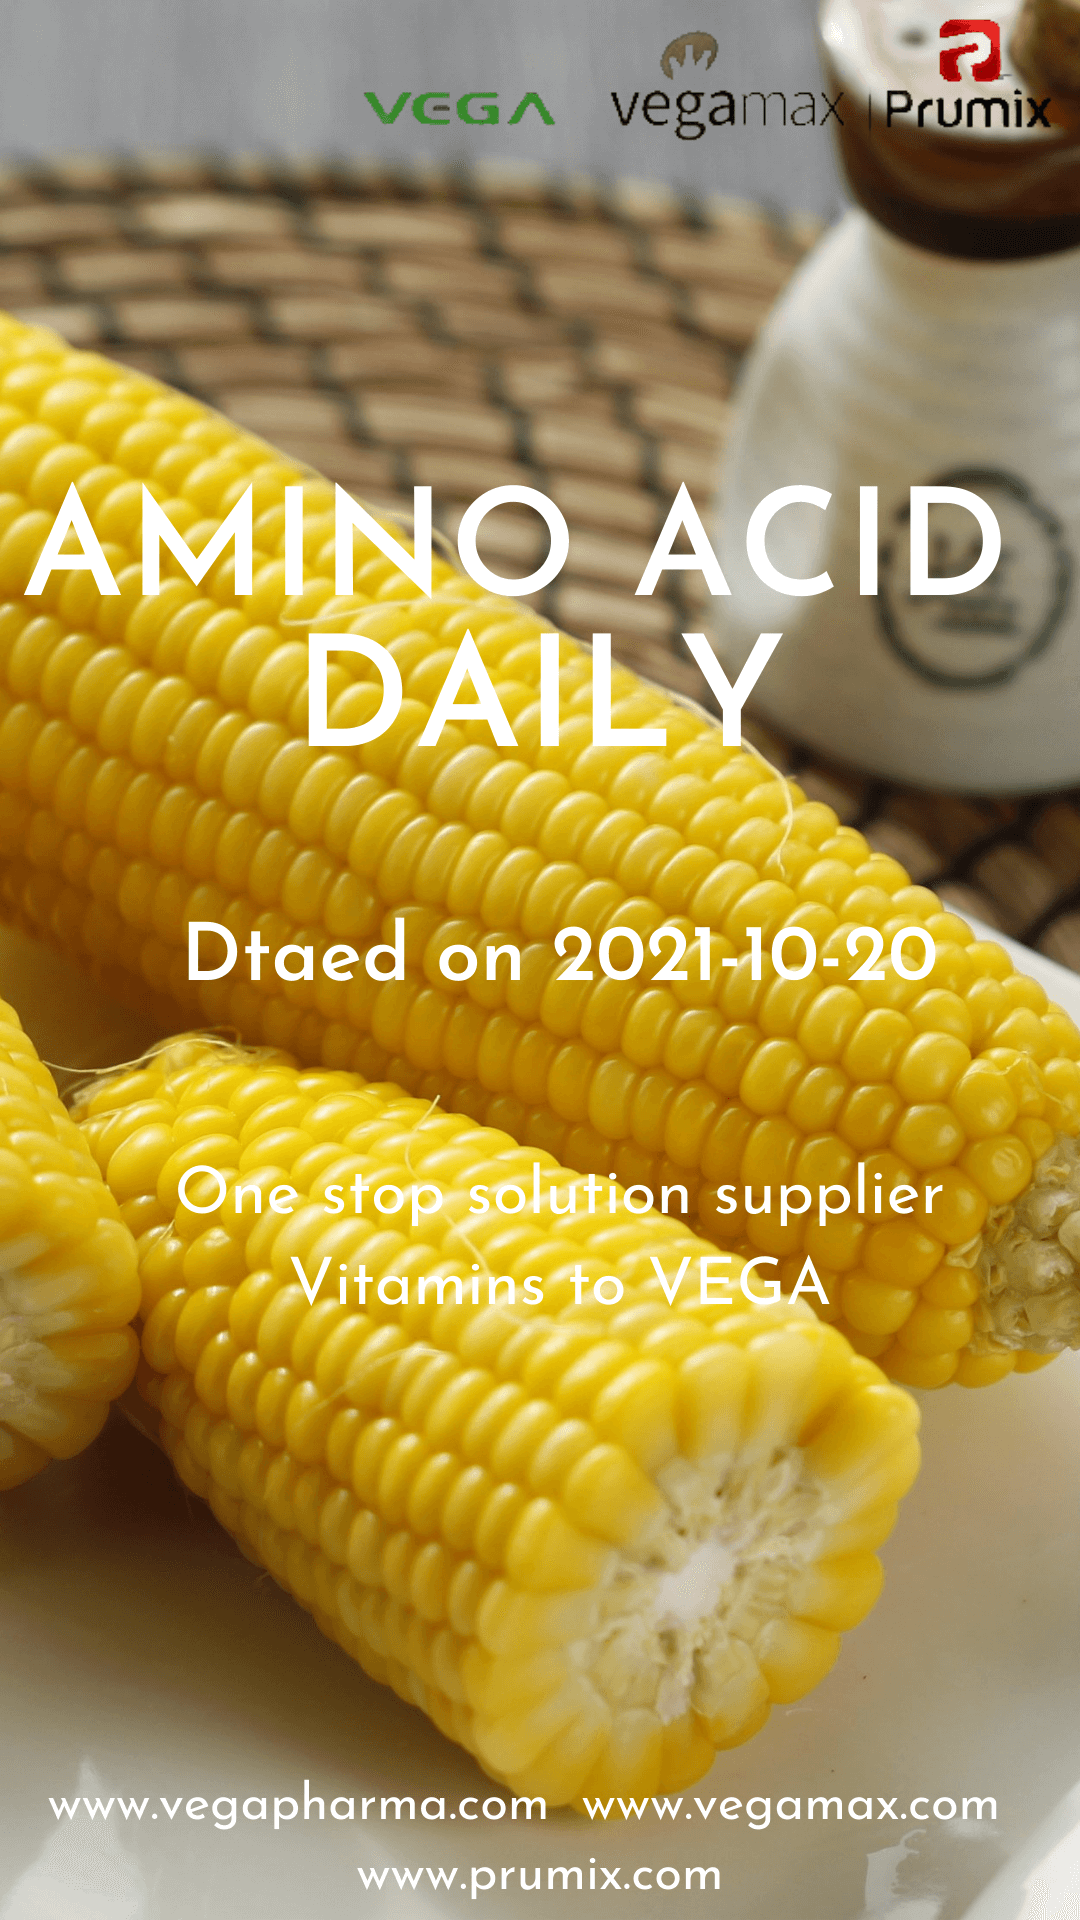 Amino acid daily 2021-10-20 (1).png